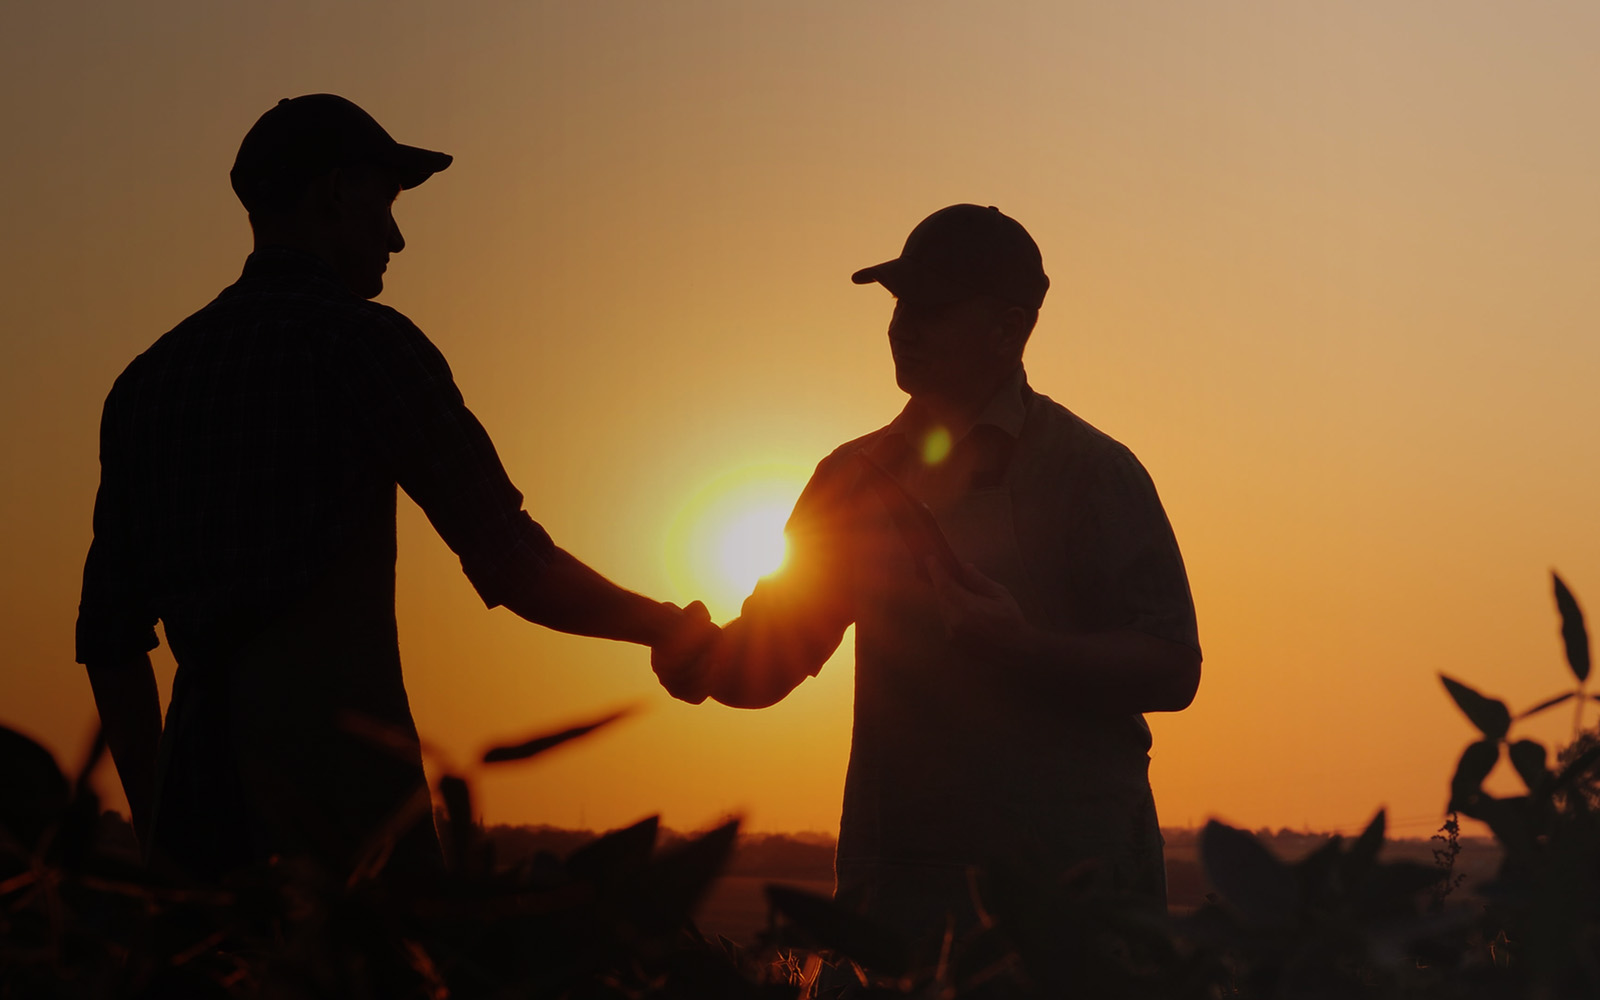 farmers shaking hands in a field